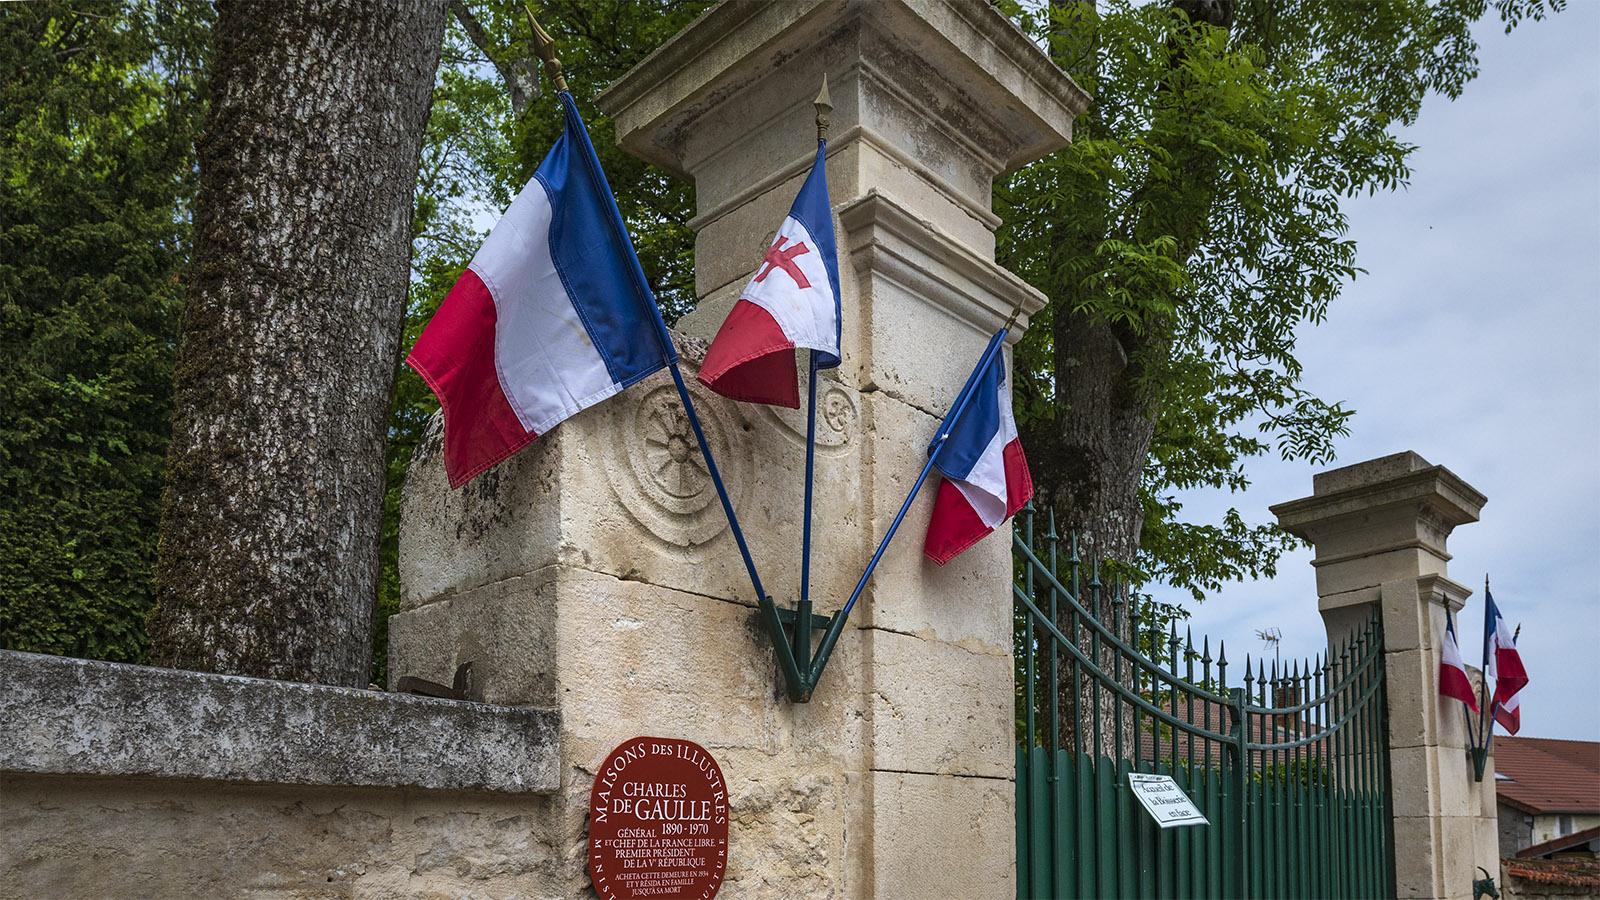 Das Anwesen von Charles de Gaulle gehört zu den Maisons des Illustres in Frankreich. Foto: Hilke Maunder